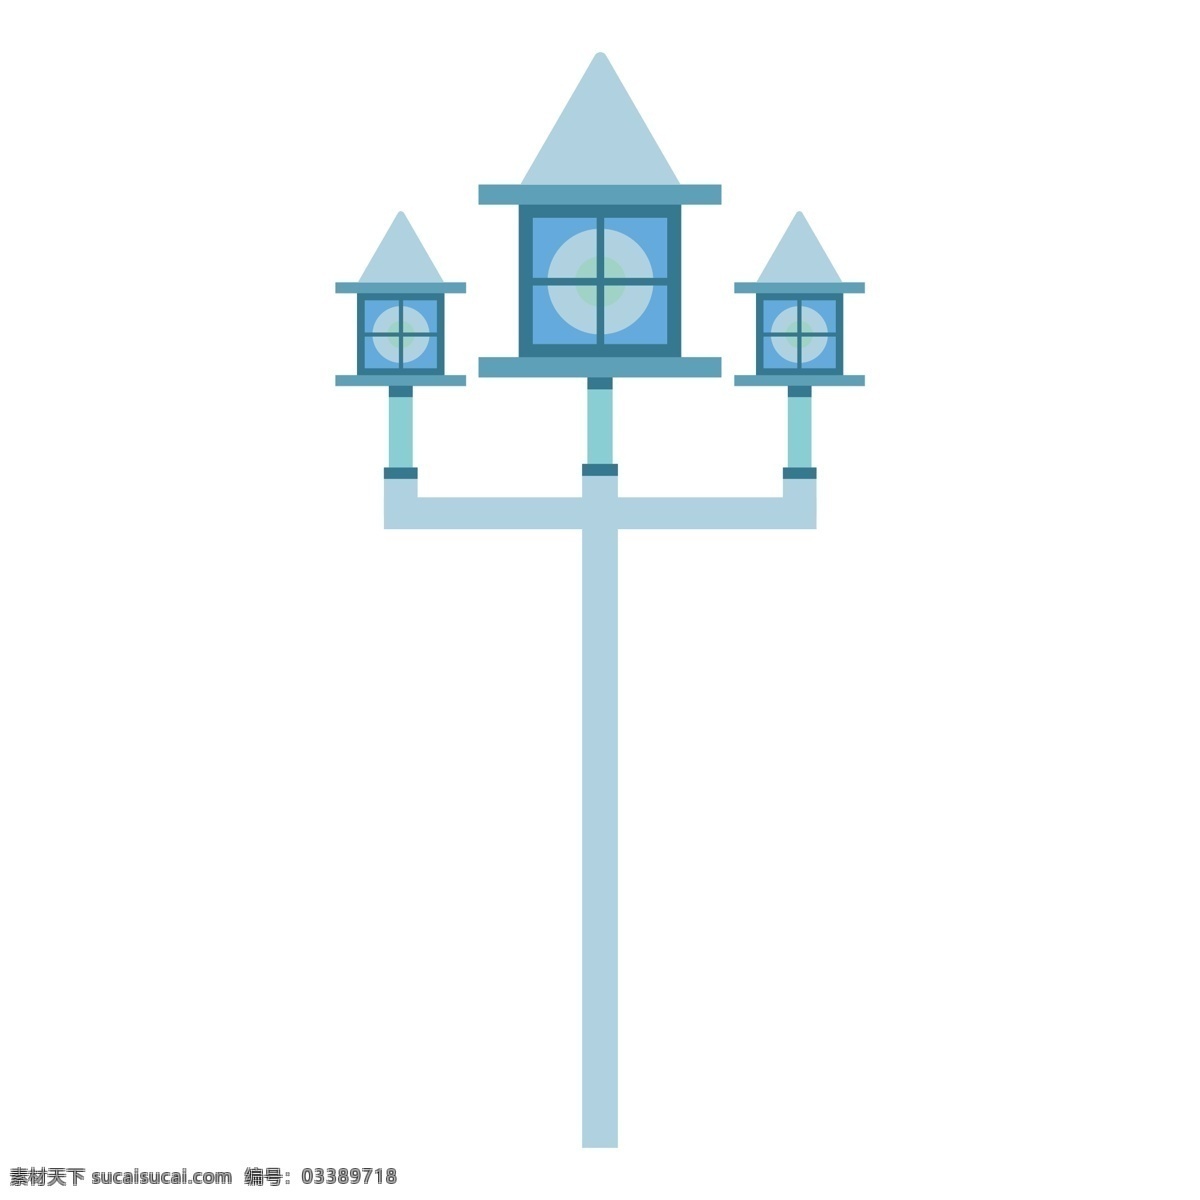 蓝色 路灯 街灯 北欧 插画 风格 简约 手绘 矢量 免 扣 免扣 人行道灯柱 电灯 照明设备 明亮